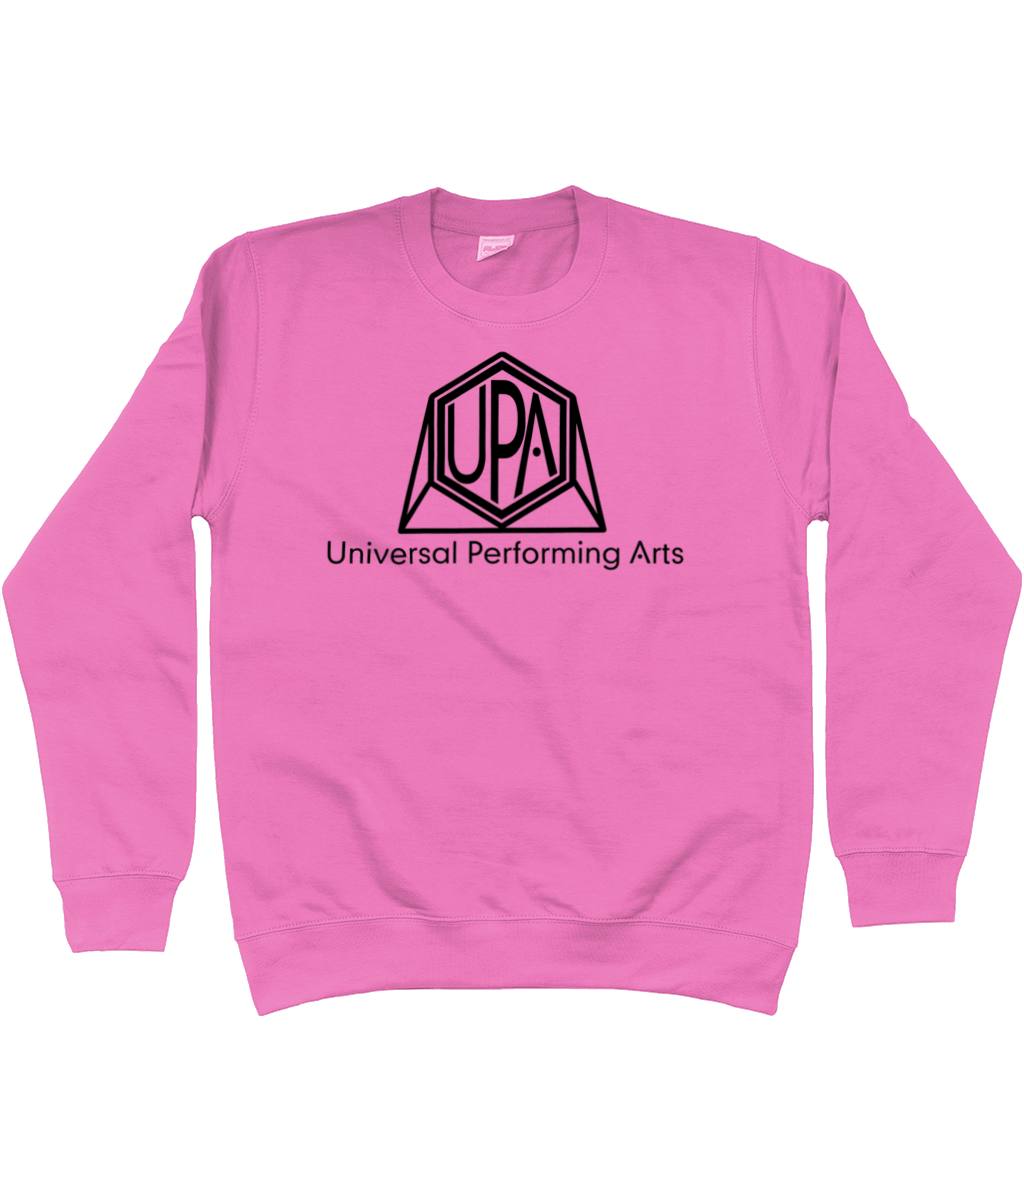 UPA Sweatshirt - Adult